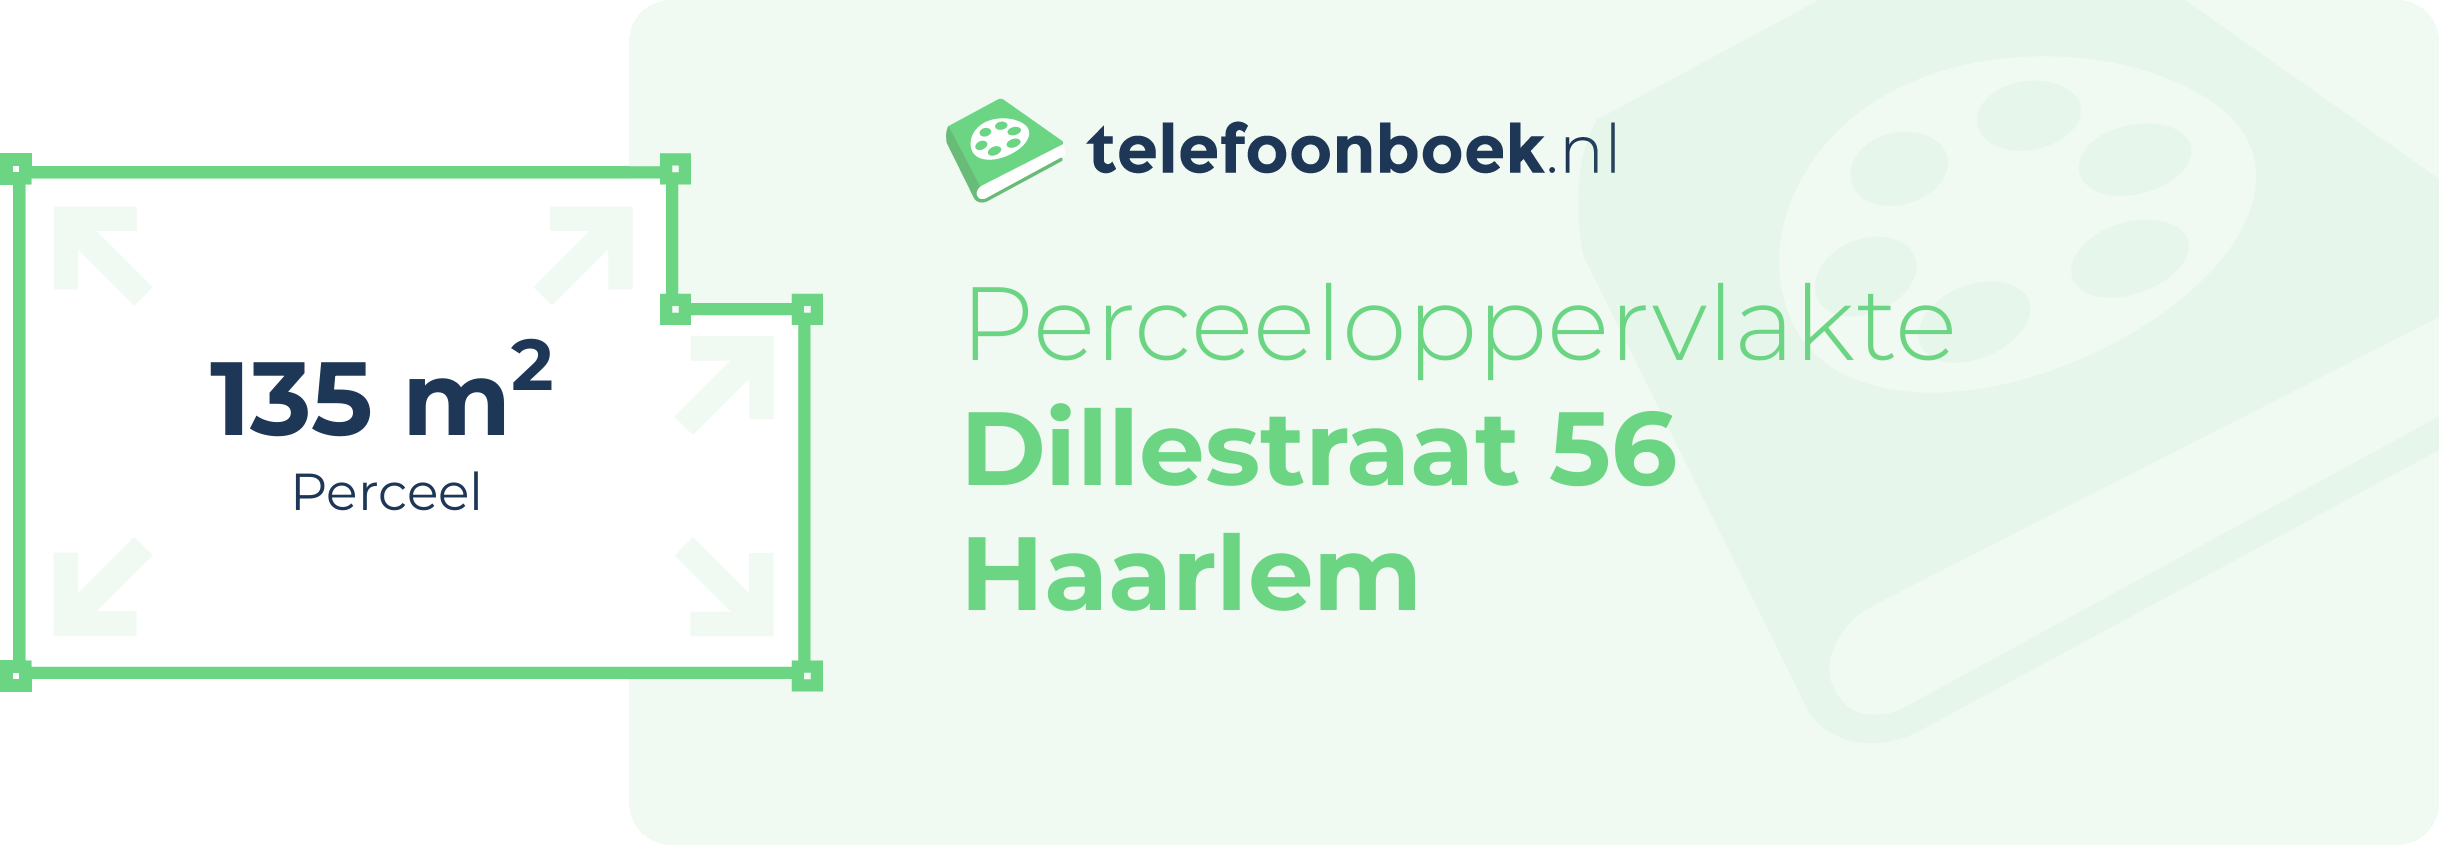 Perceeloppervlakte Dillestraat 56 Haarlem